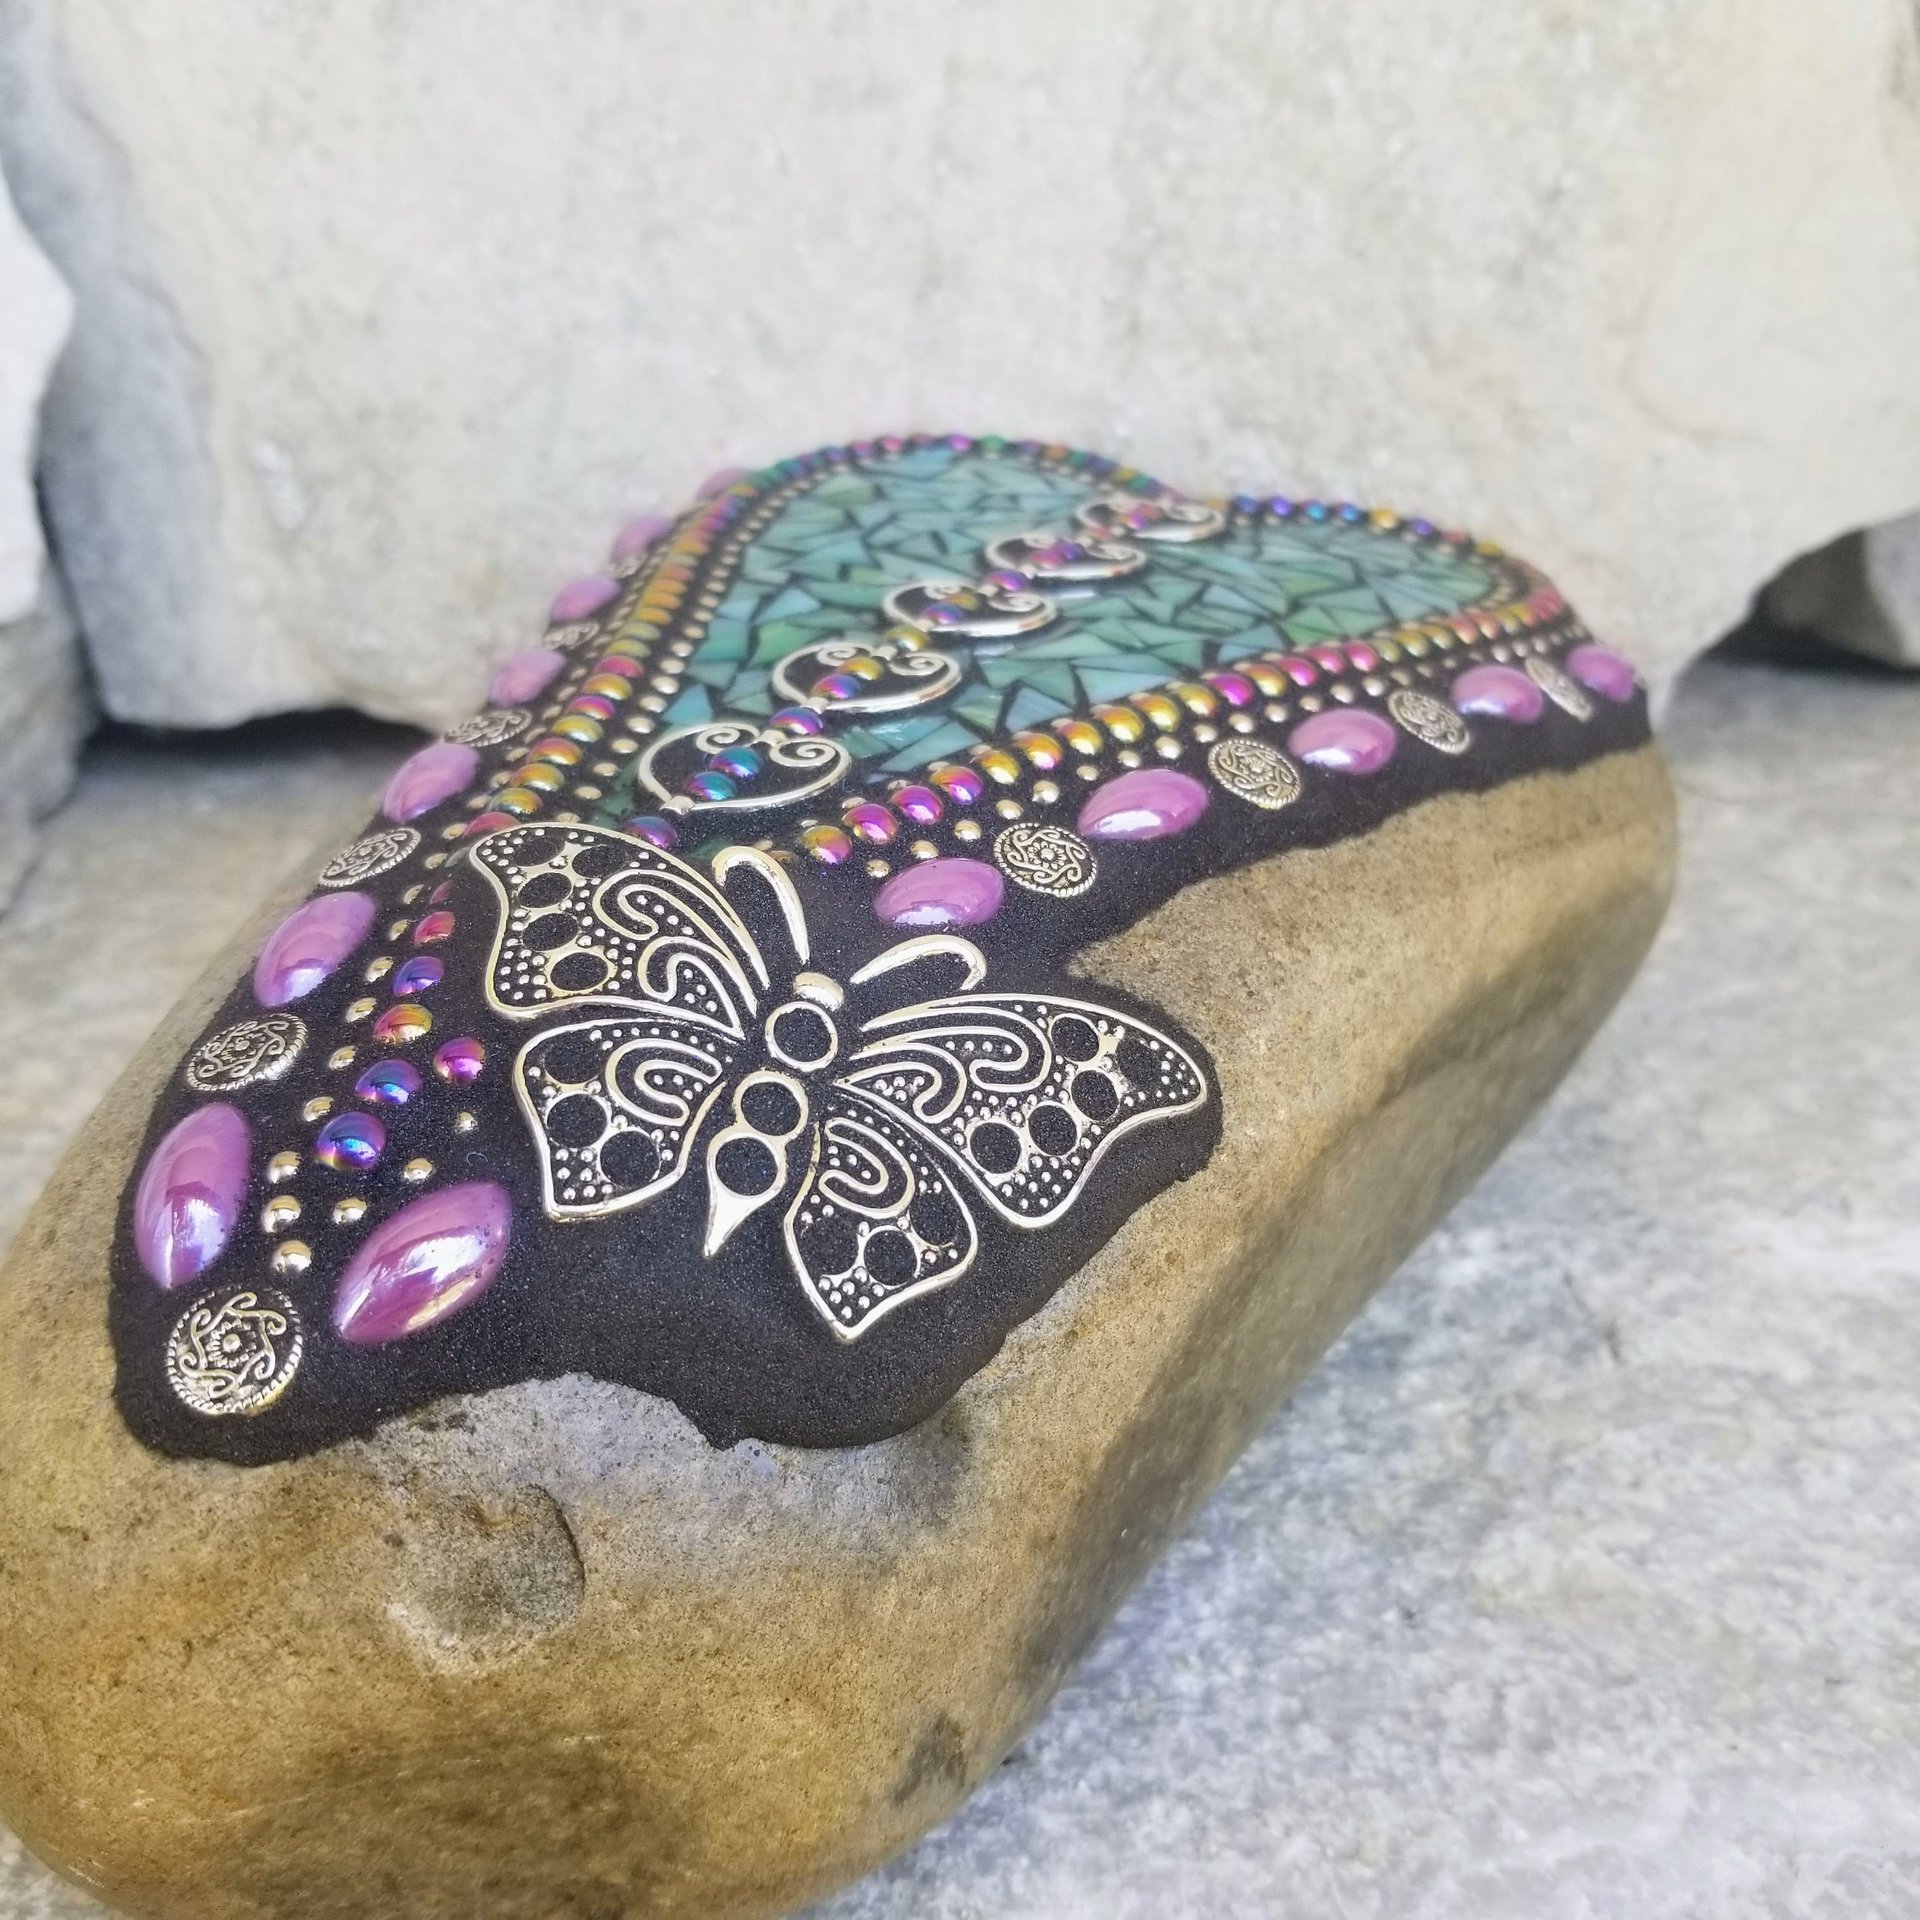 Teal Mosaic Heart Garden Stone, Butterfly